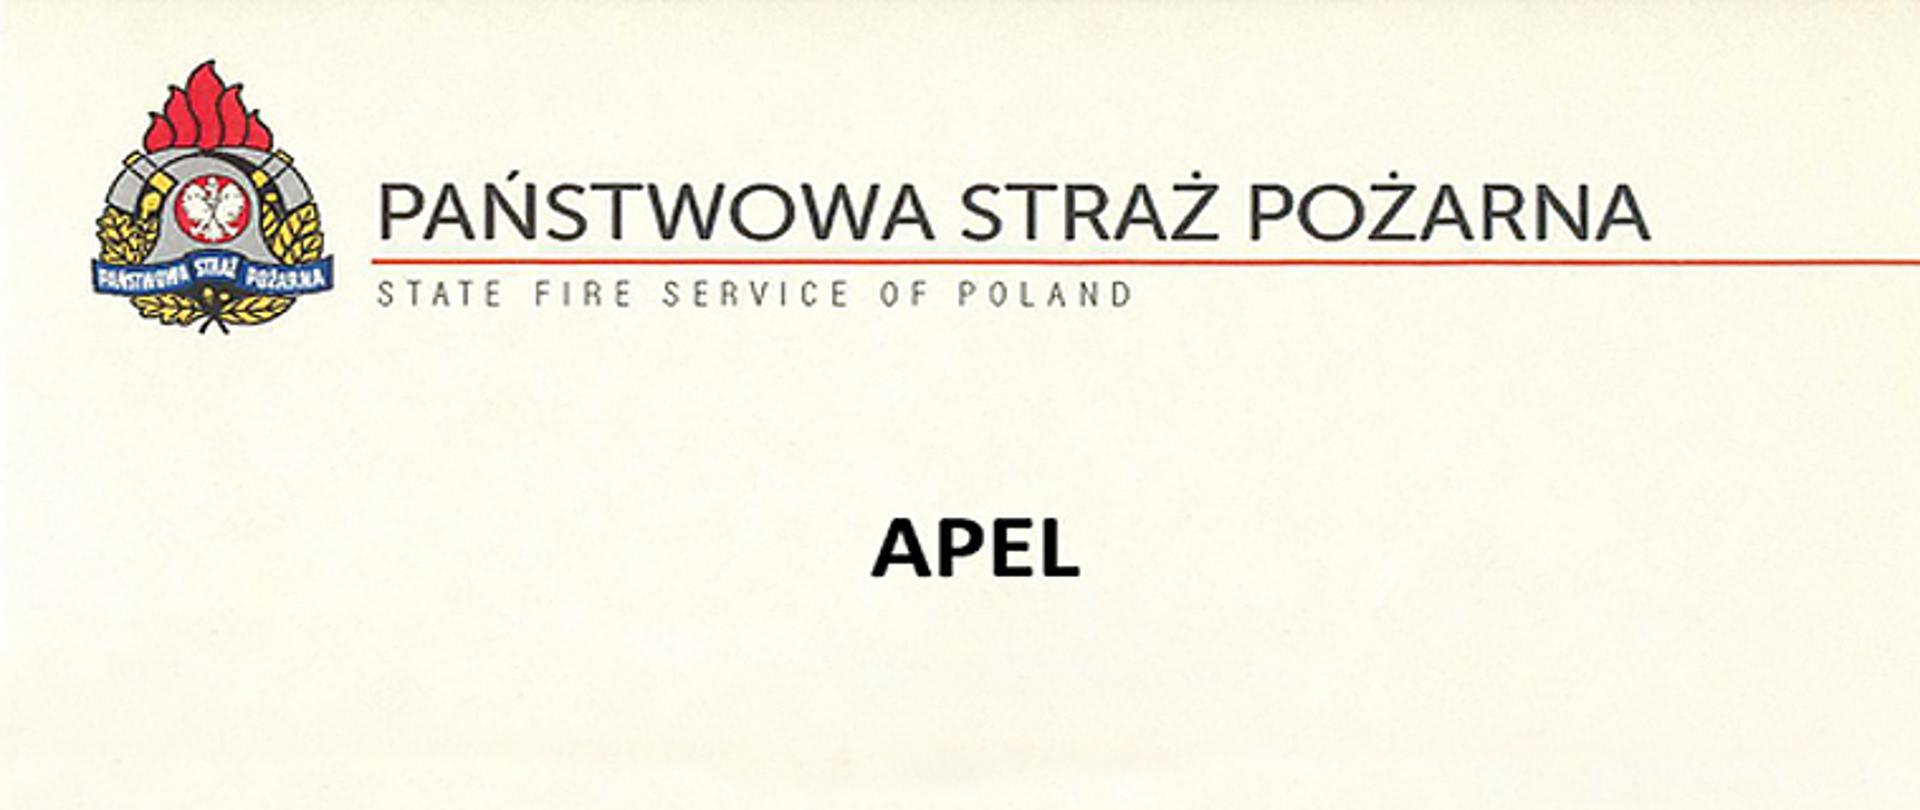 Na zdjęciu znajduje się w górnym lewym rogu godło Państwowej Straży Pożarnej obok którego biegnie do prawej strony zdjęcia linia barwy czerwonej, nad którą umieszczono napis PAŃSTWOWA STRAŻ POŻARNA, pod linią napis State Fire Service Of Poland, w środkowej części napis APEL.